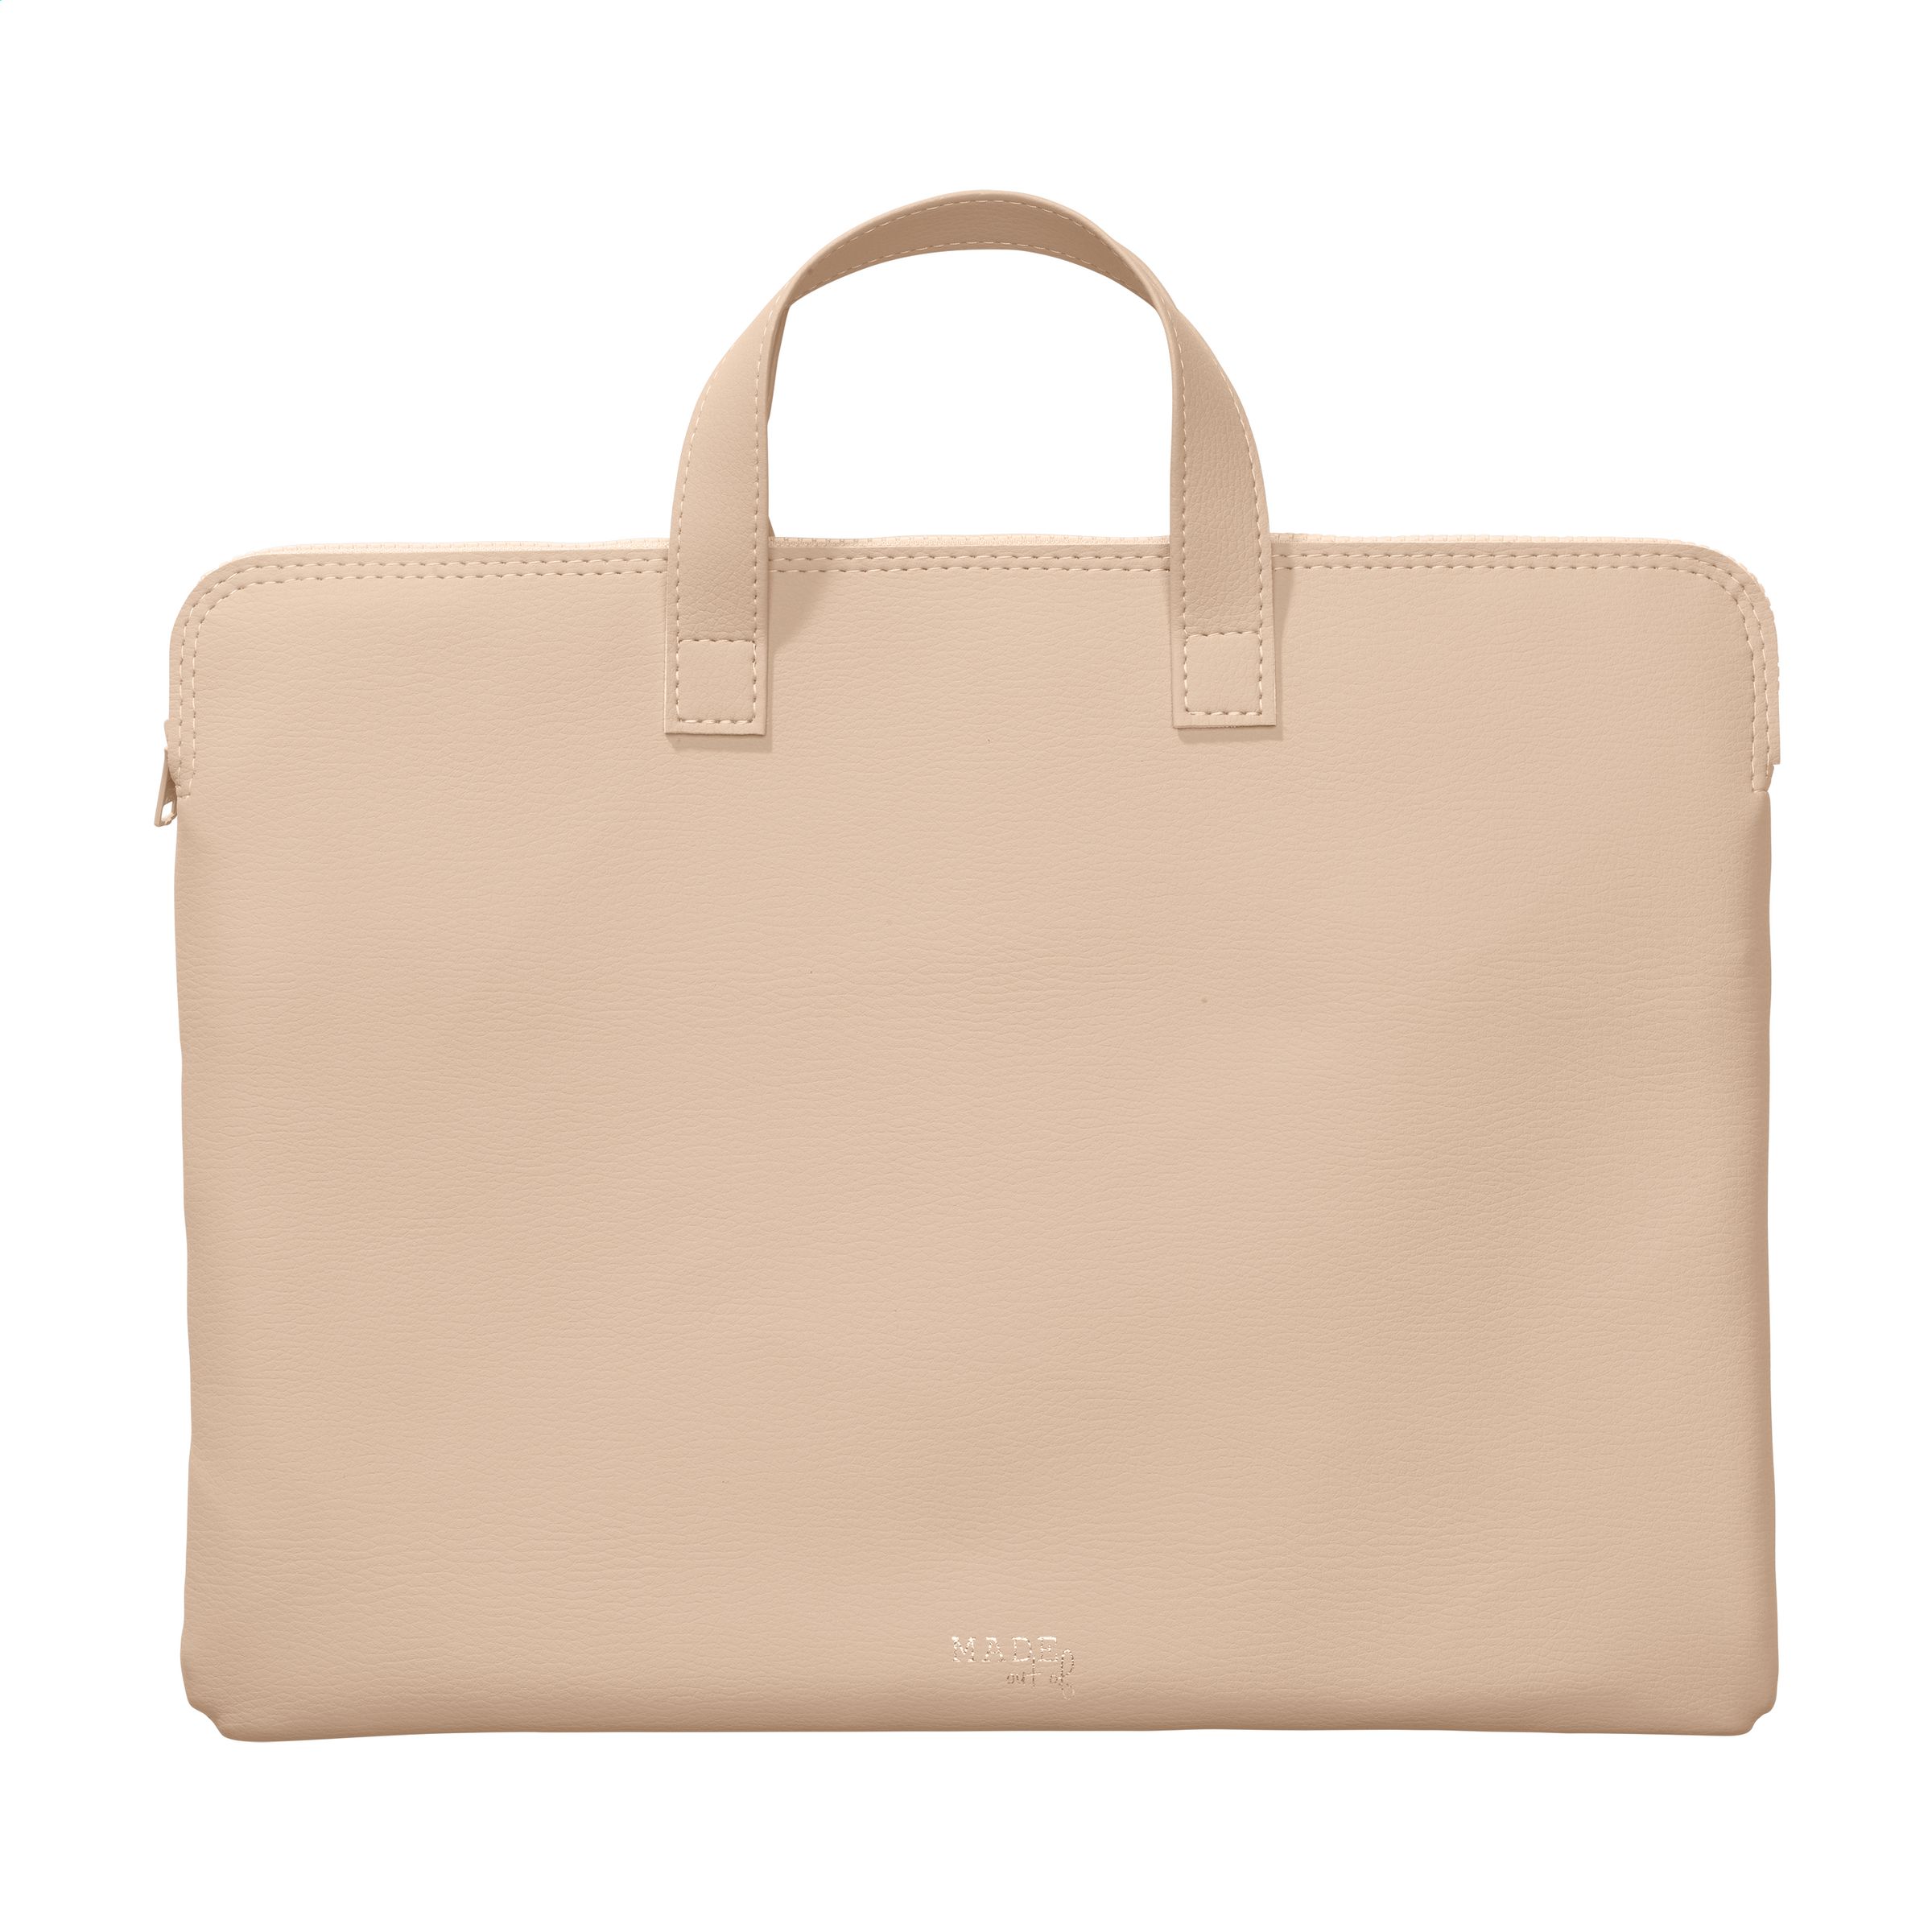 Evalueerbaar Vernederen auteur Apple Leather Laptop Bag 14/15 inch laptoptas bedrukken? - Voordelig & snel  bestellen